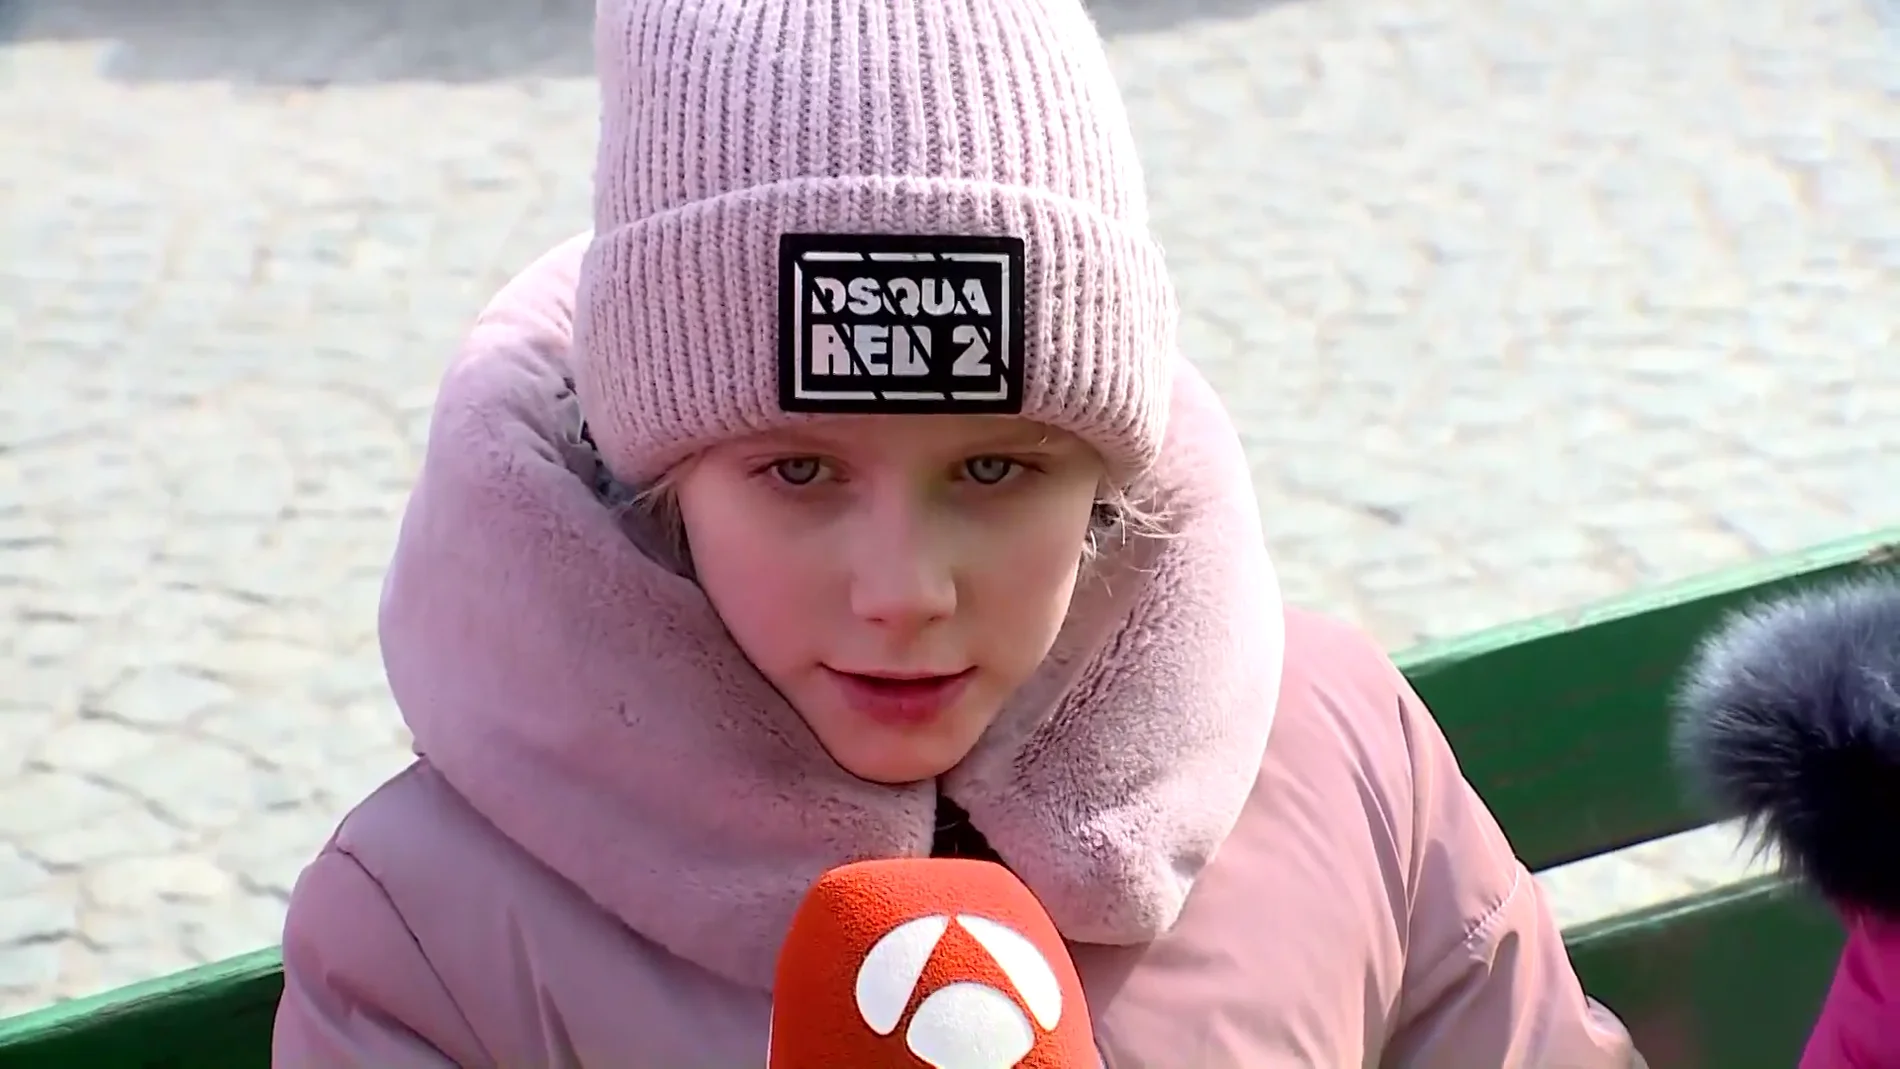 El testimonio de una niña tras huir de Ucrania: "Cuándo íbamos en el coche vimos caer bombas y había tanques ardiendo"